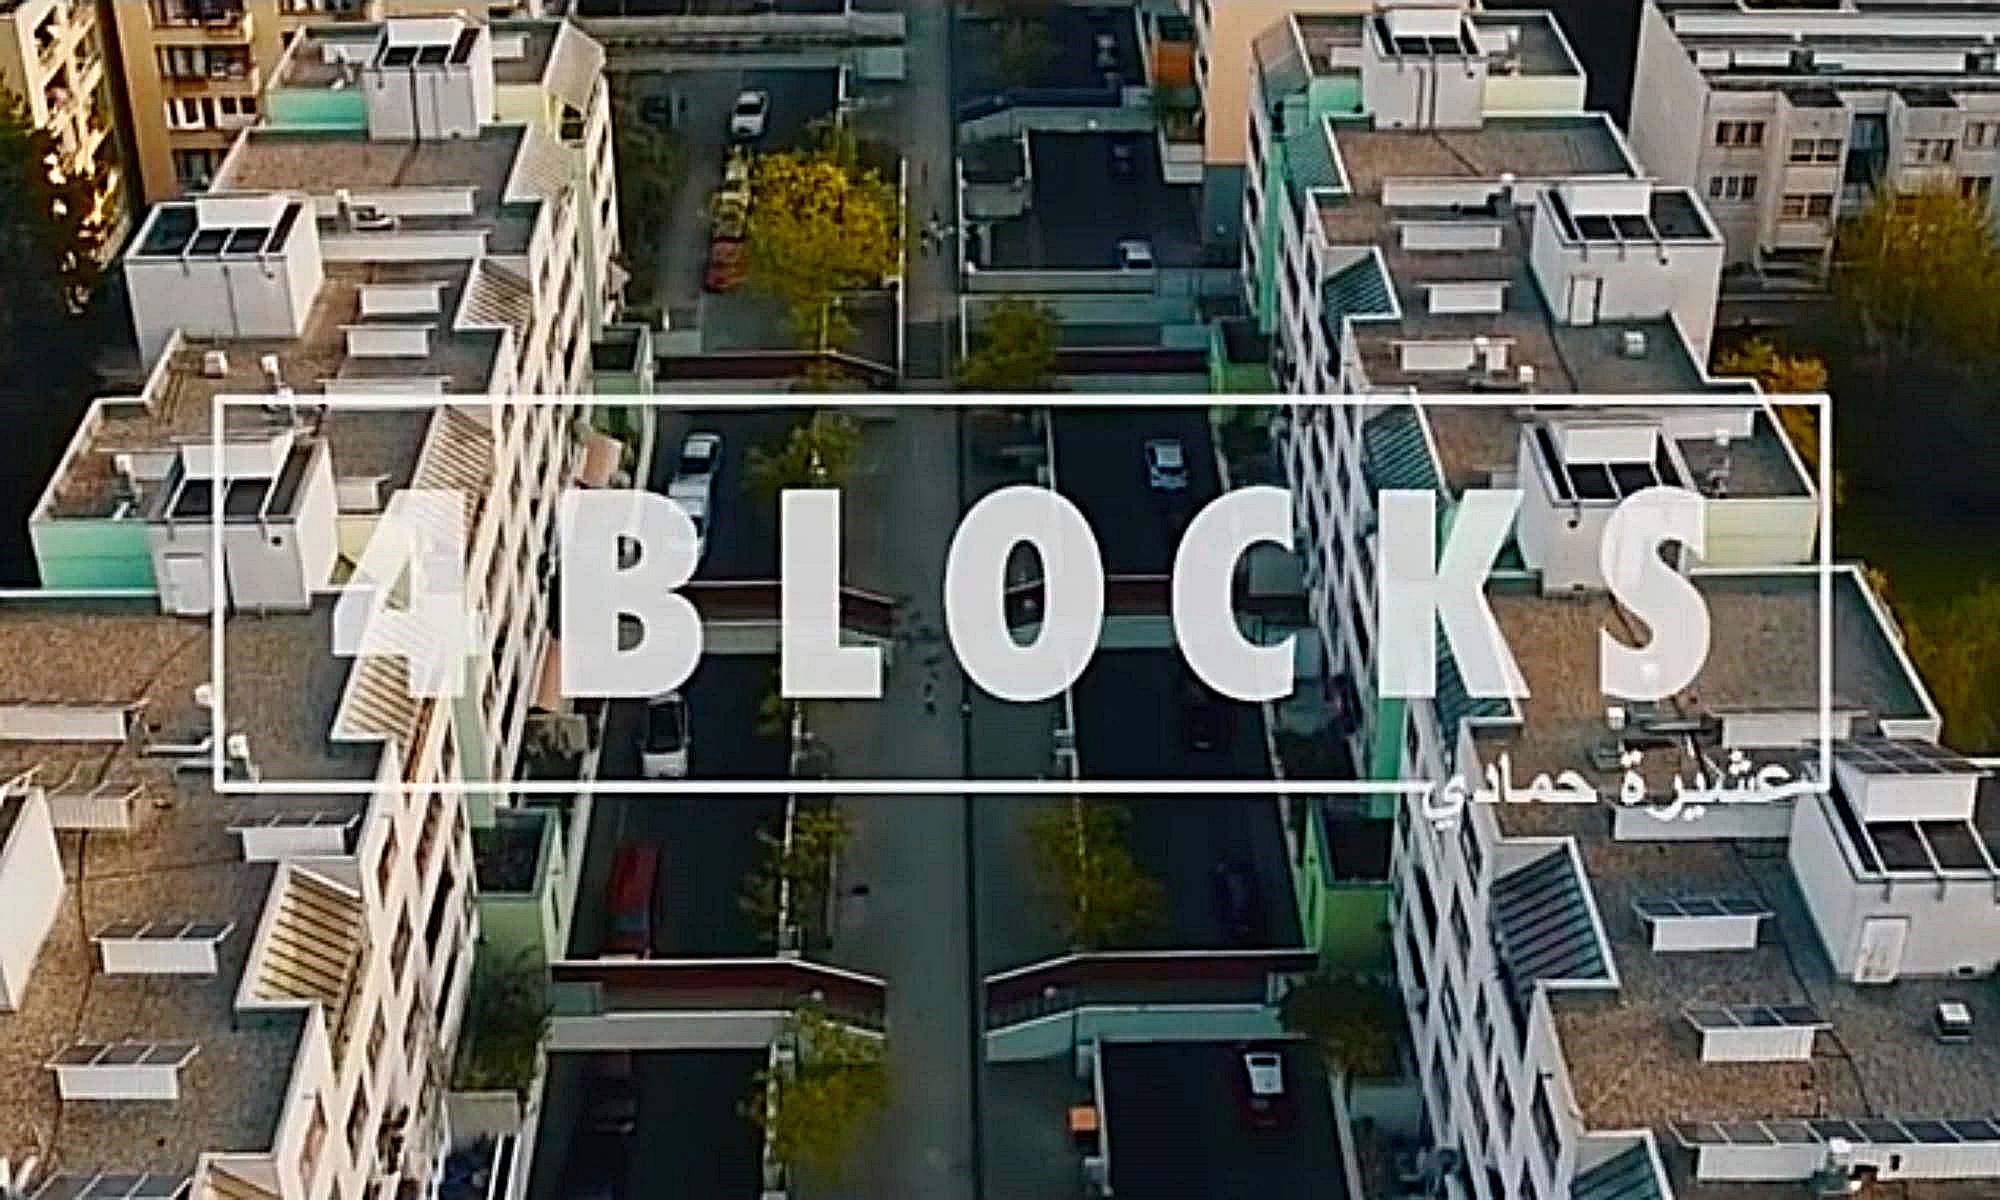 Serie, Deutschland, 4 Blocks